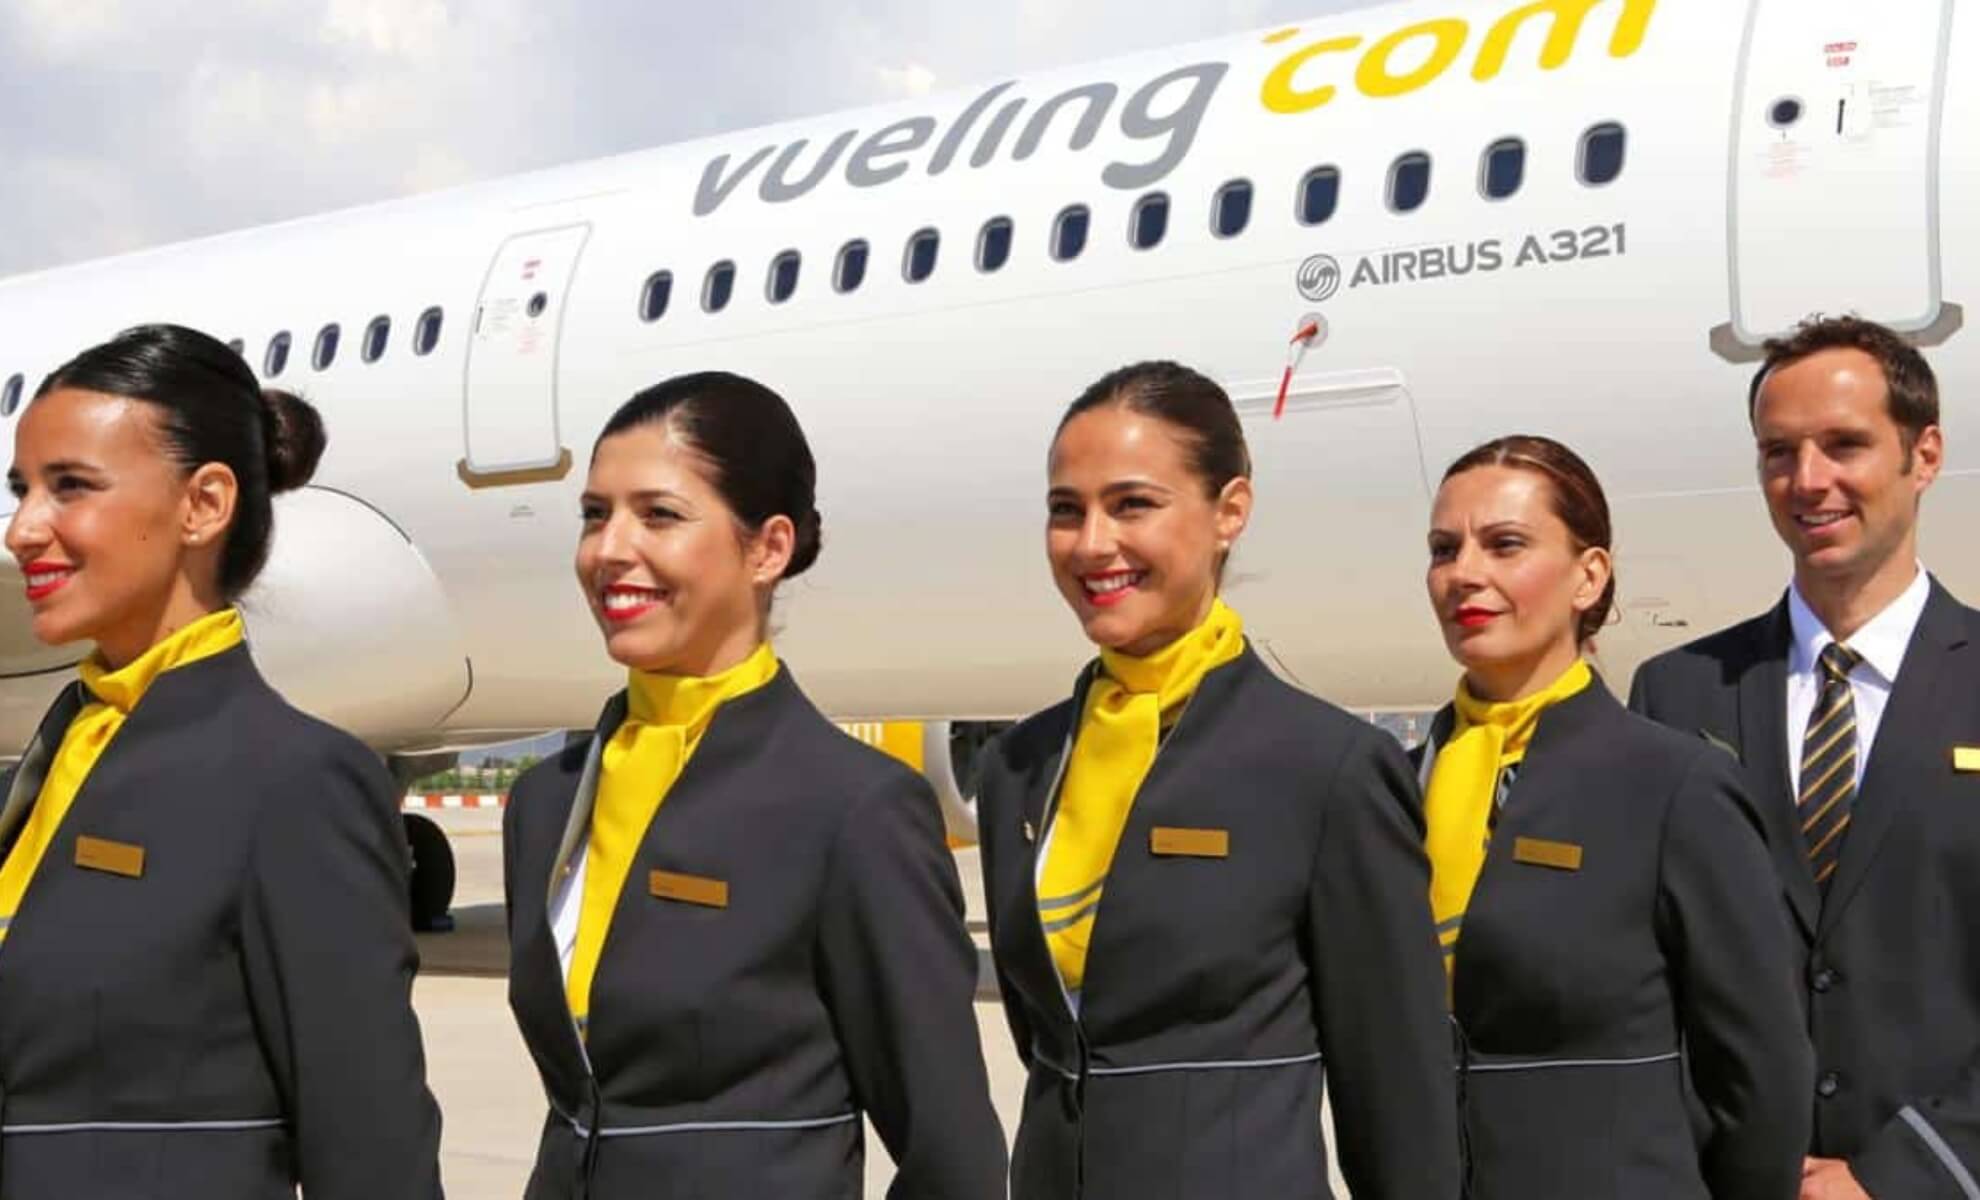 Stewards et hôtesses de l'air de la compagnie aérienne Vueling